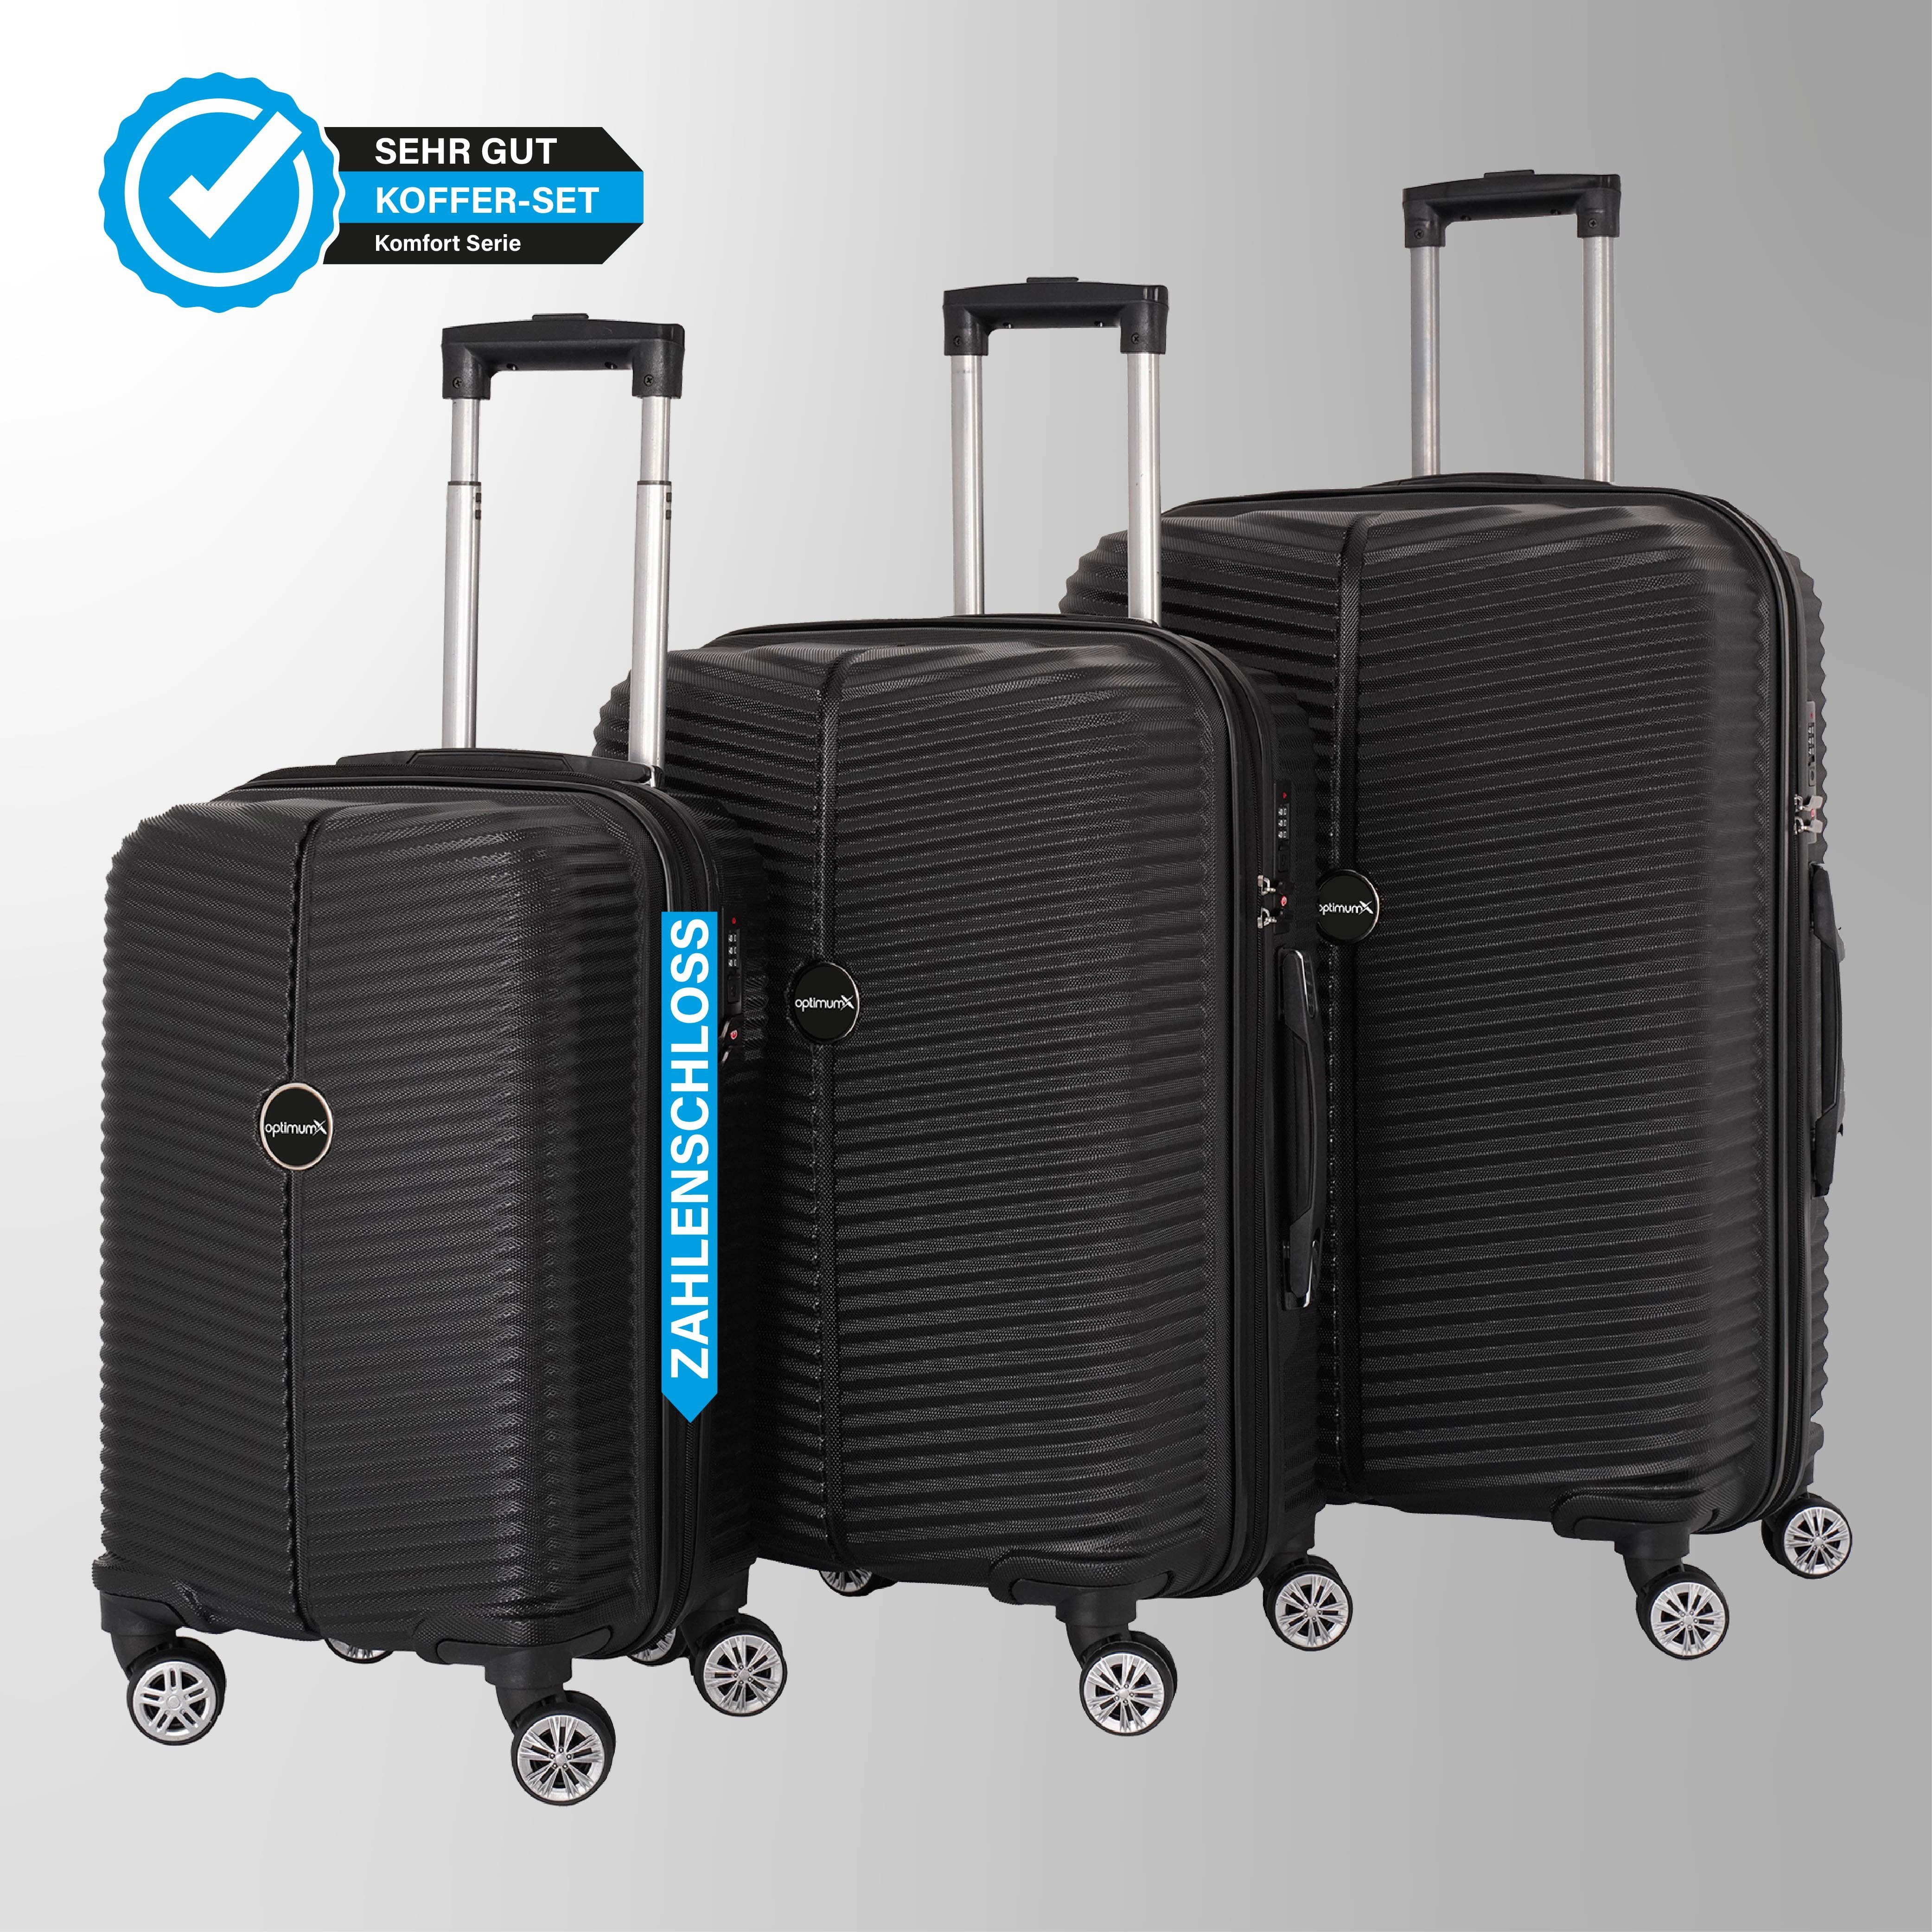 optimumX Kofferset 3-Teilig Koffer Premium Set Hartschalenkoffer  ABS-Trolley, 4 Rollen, (3 tlg)